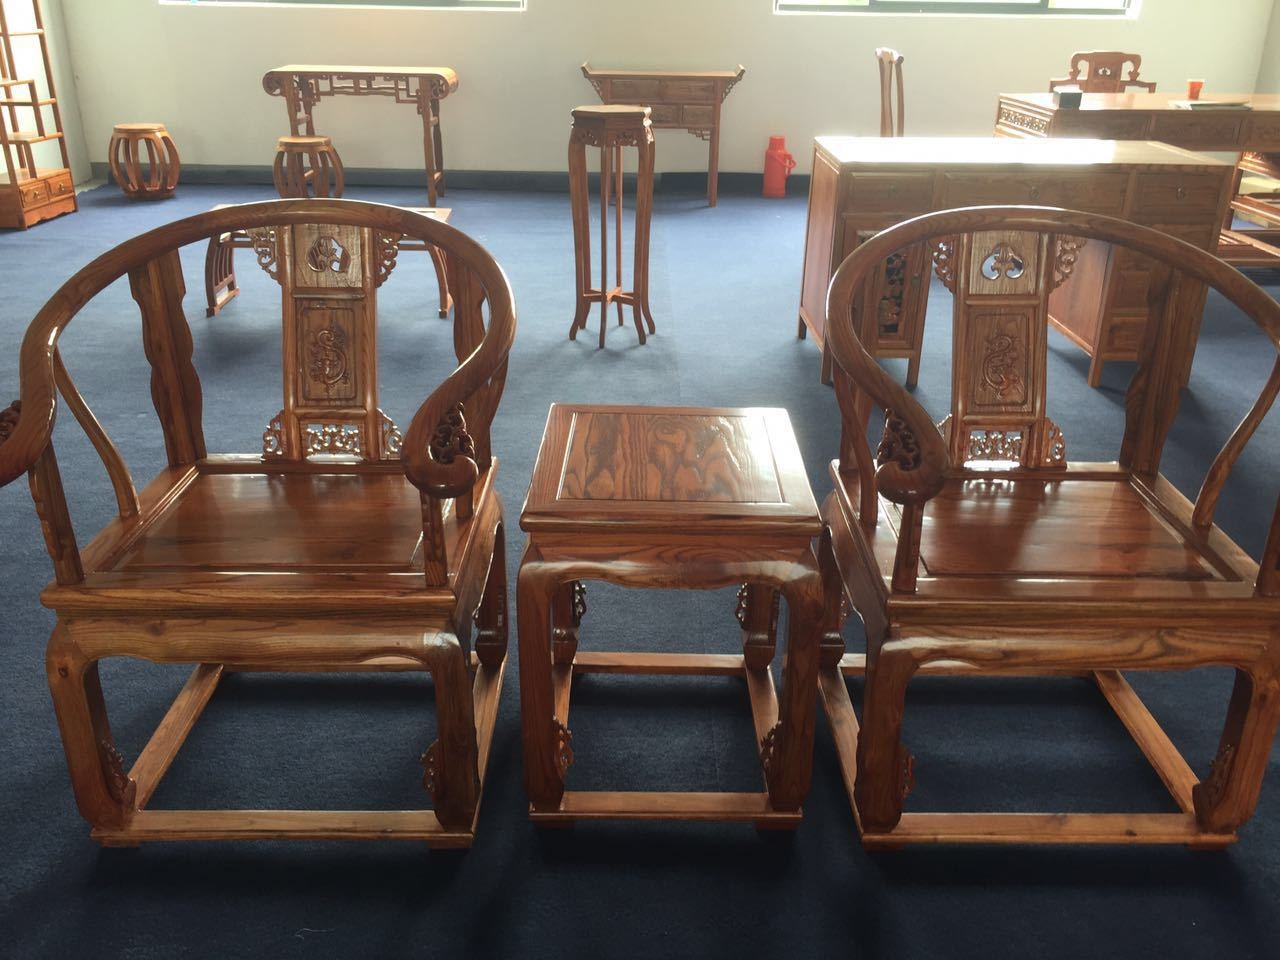 木雕手工木制工艺品家居桌椅加工 香樟木 木质品摆件雕刻